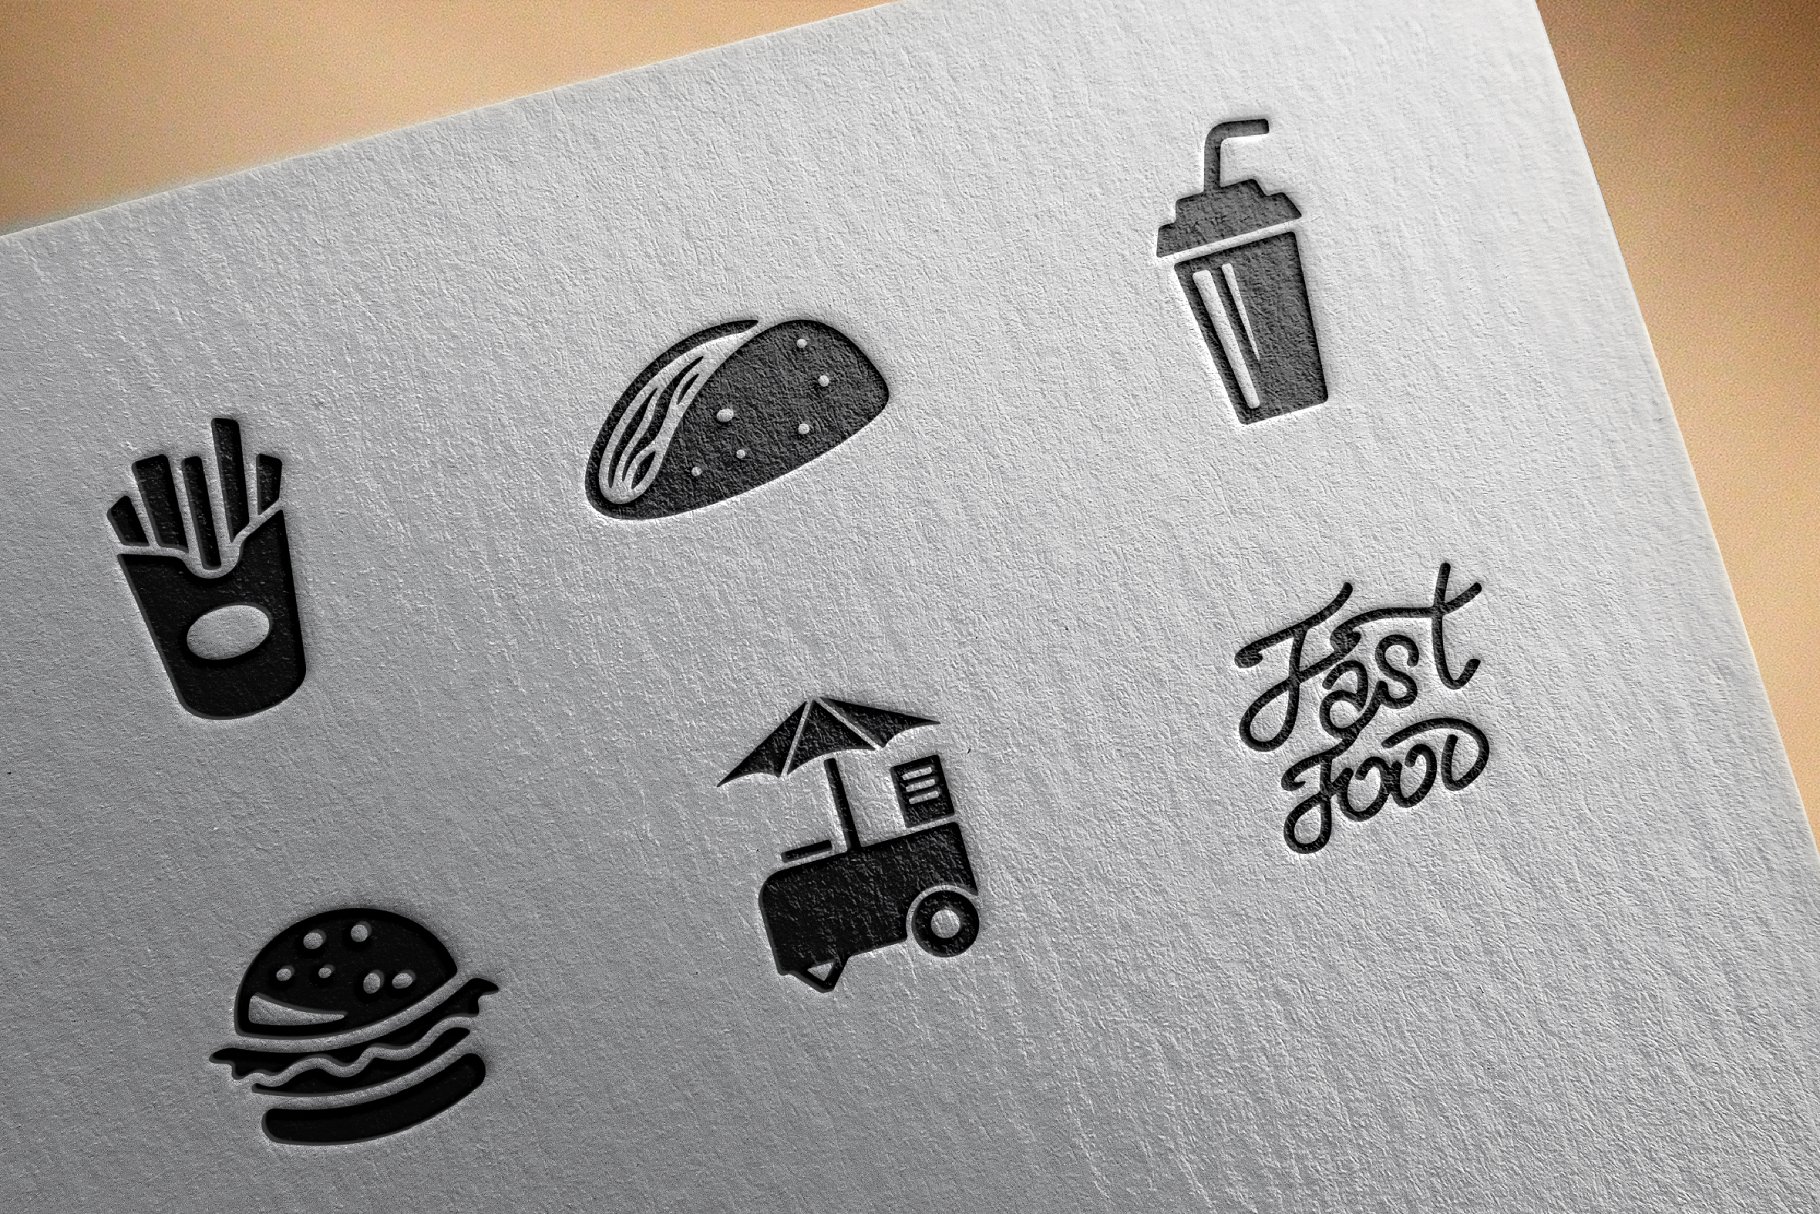 西式快餐主题图标 Fast food icons插图